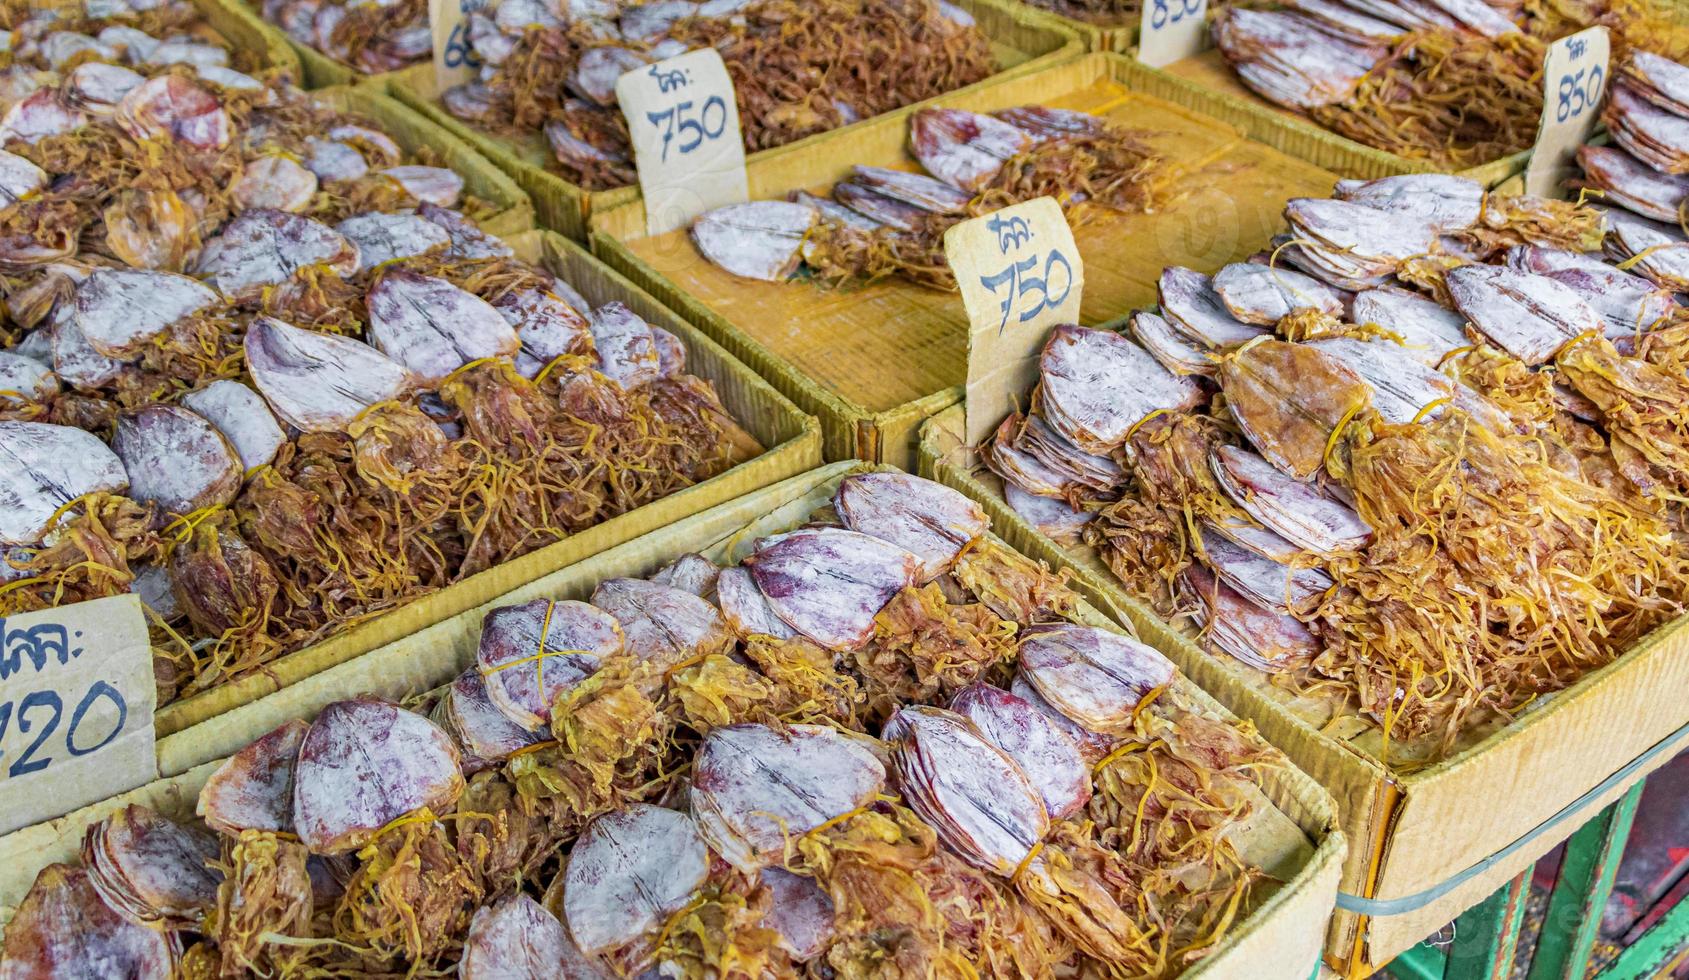 acquistare calamari secchi cibo da strada tailandese città cinese bangkok thailandia. foto